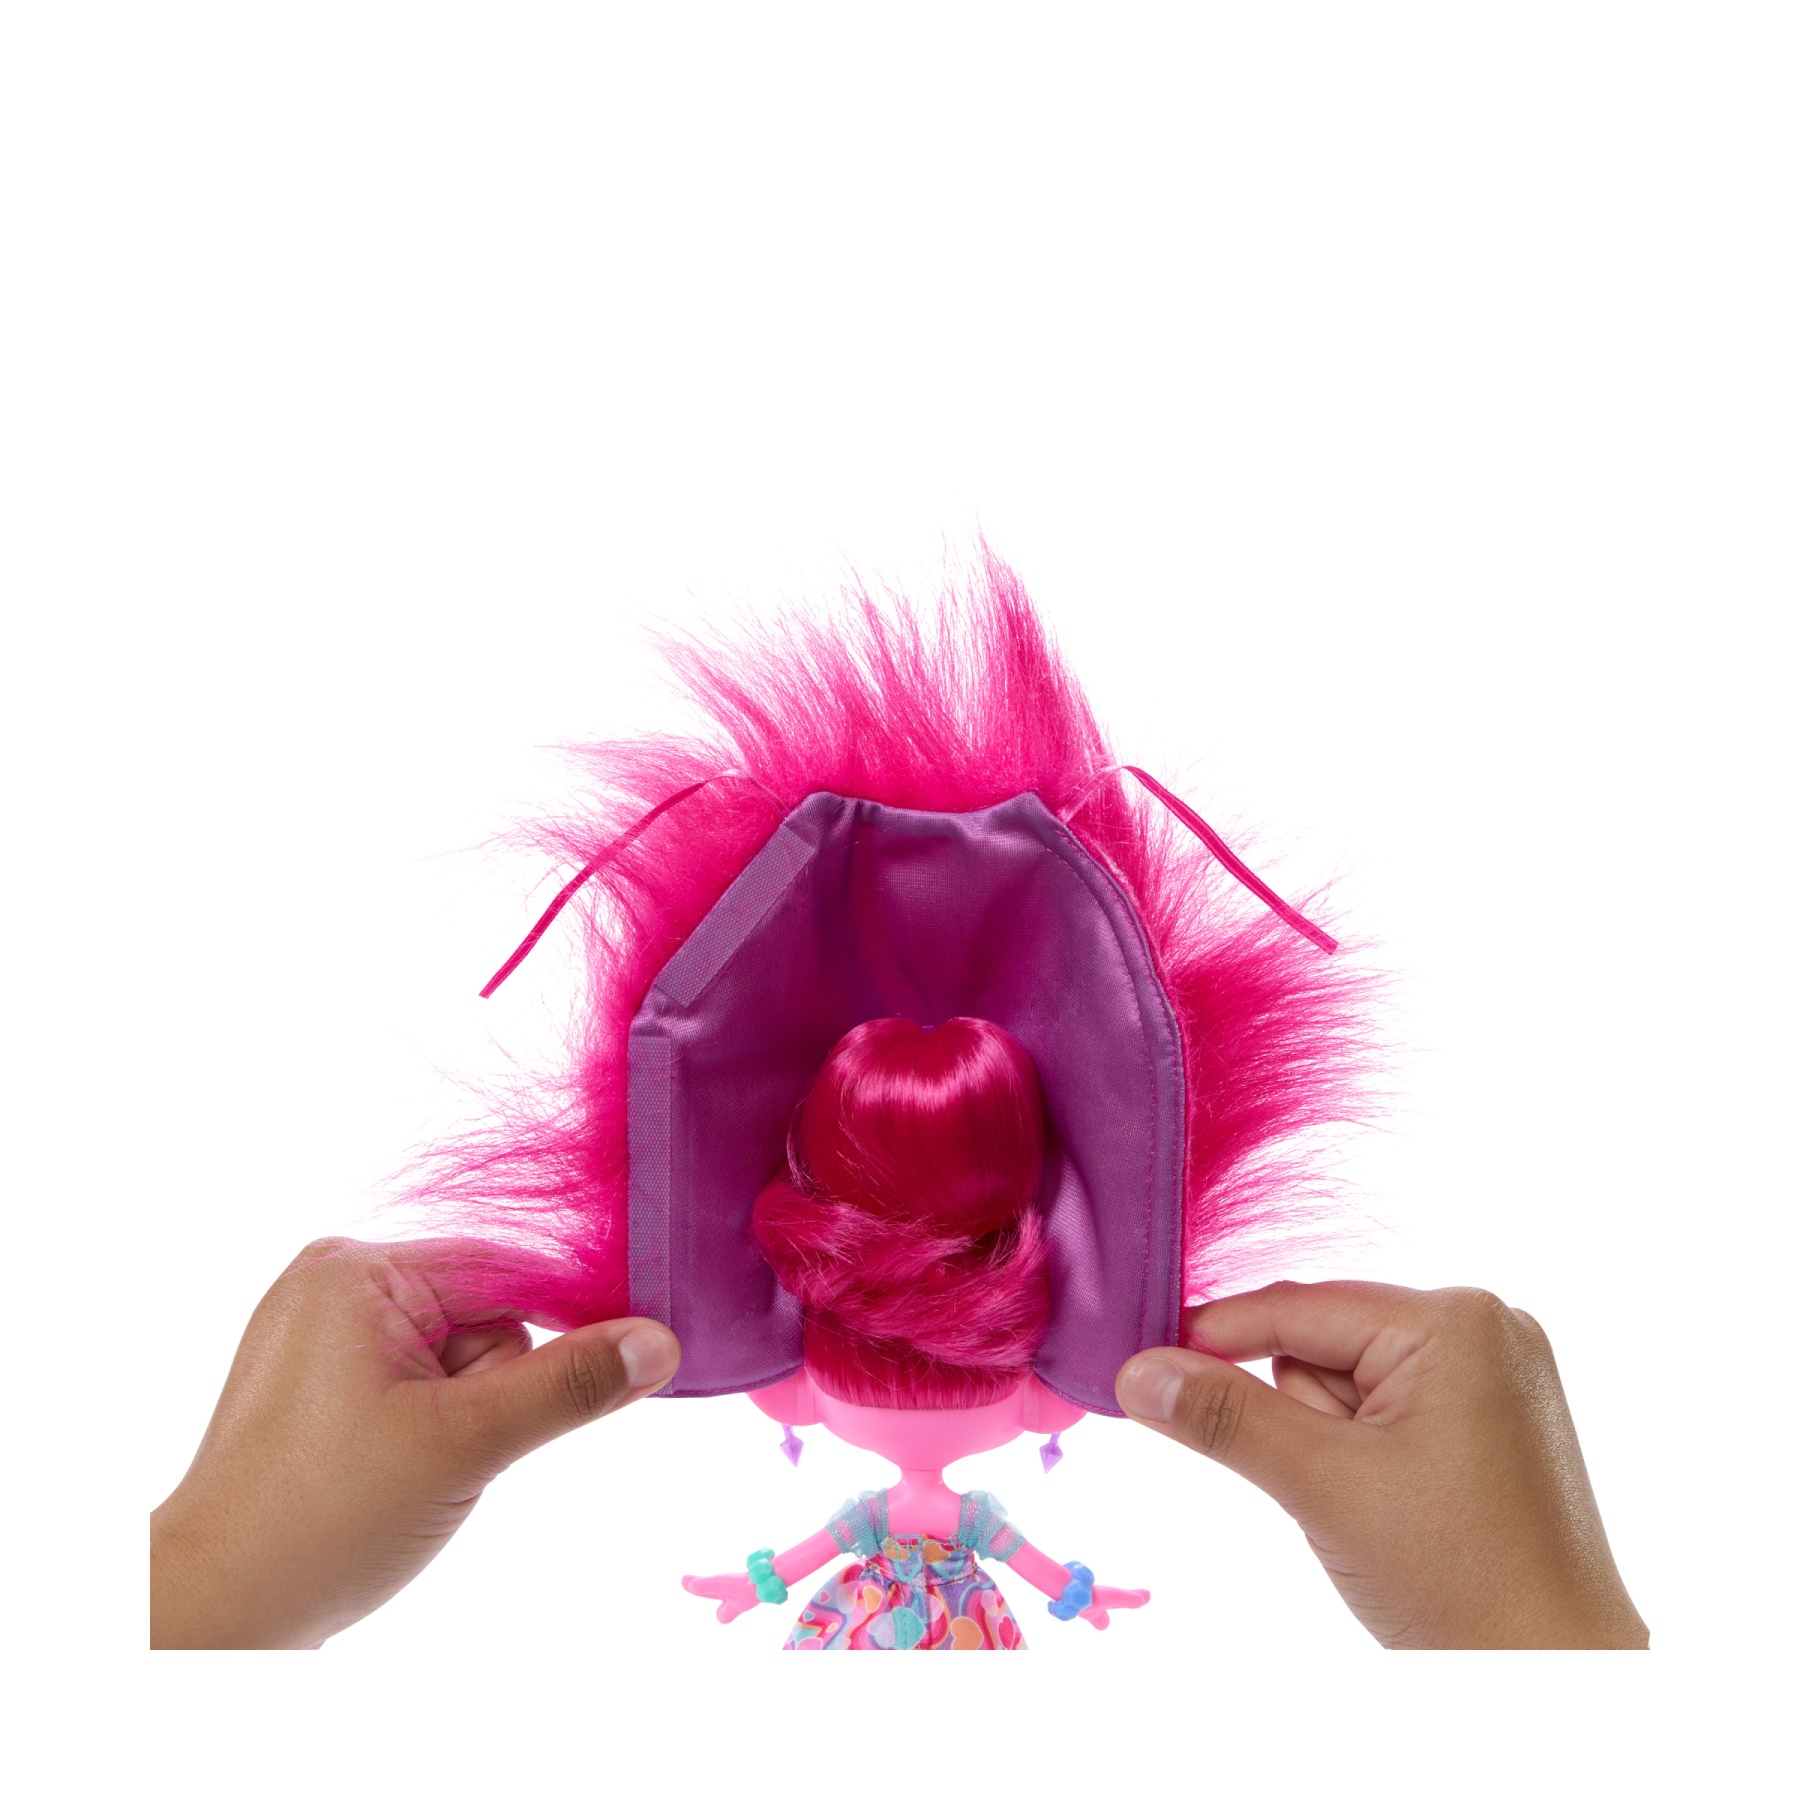 Dreamworks trolls tutti insieme - regina poppy magiche acconciature, bambola con capelli di peluche trasformabili, abiti e 15+ accessori, look ispirato al film, 3+ anni, hnf16 - Trolls